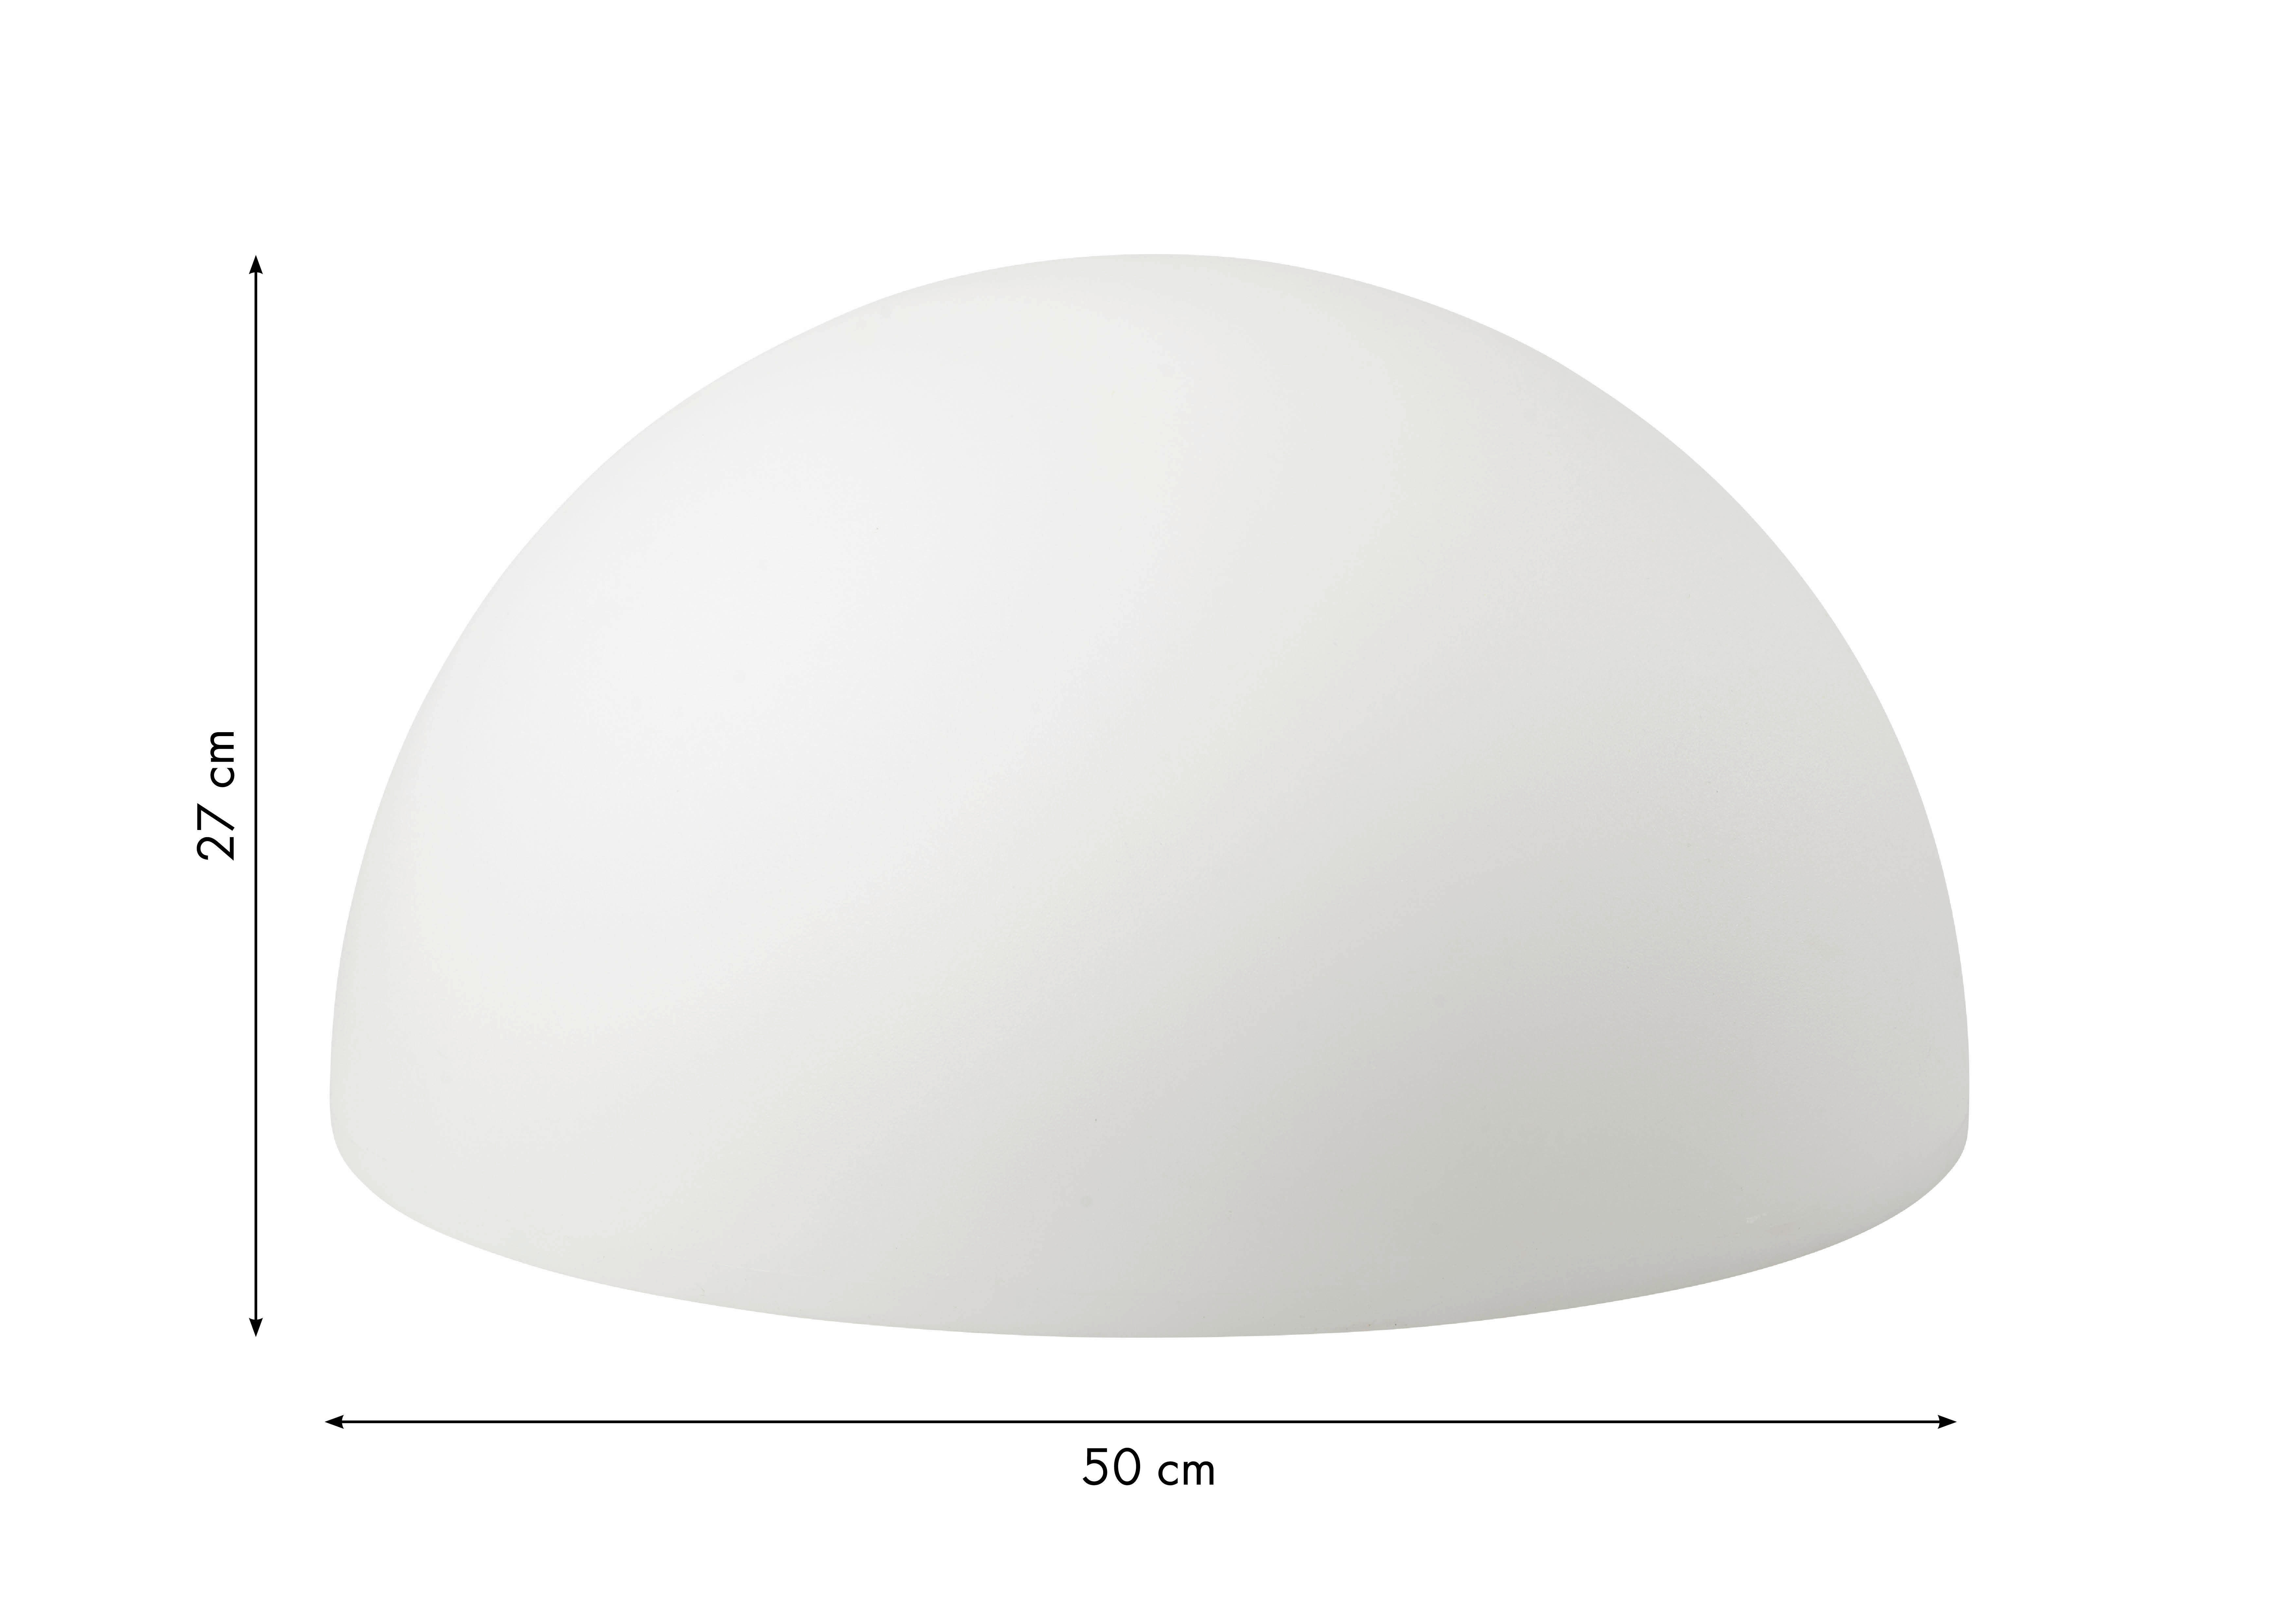 LED-LAMPA 50 cm  - vit, Basics, plast (50cm) - Ambia Home